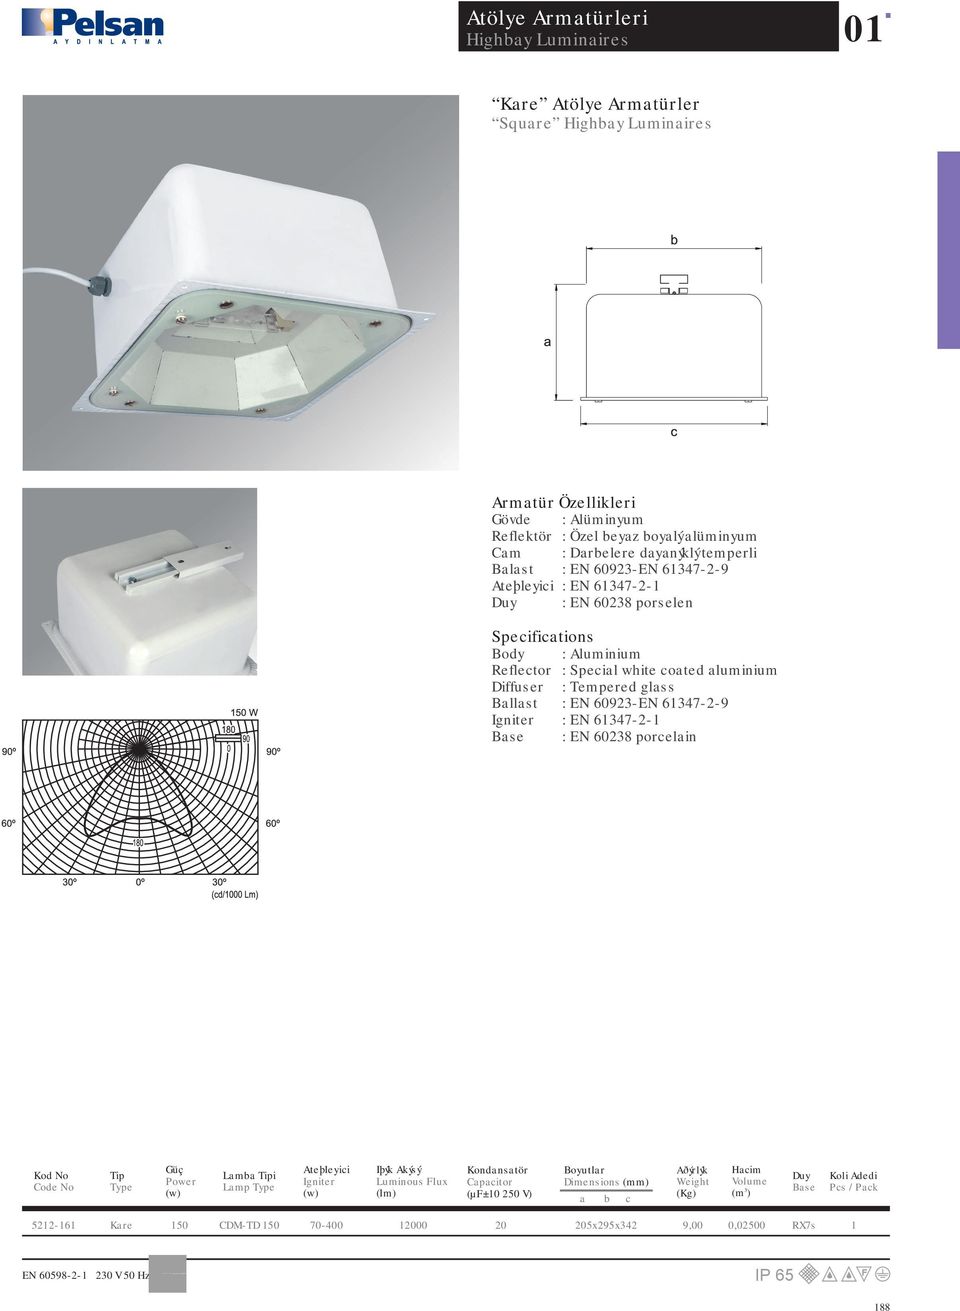 Body : Aluminium Reflector : Specil white coted luminium Diffuser : Tempered glss Bllst : EN 60923-EN 6137-2-9 : EN 6137-2-1 Bse :